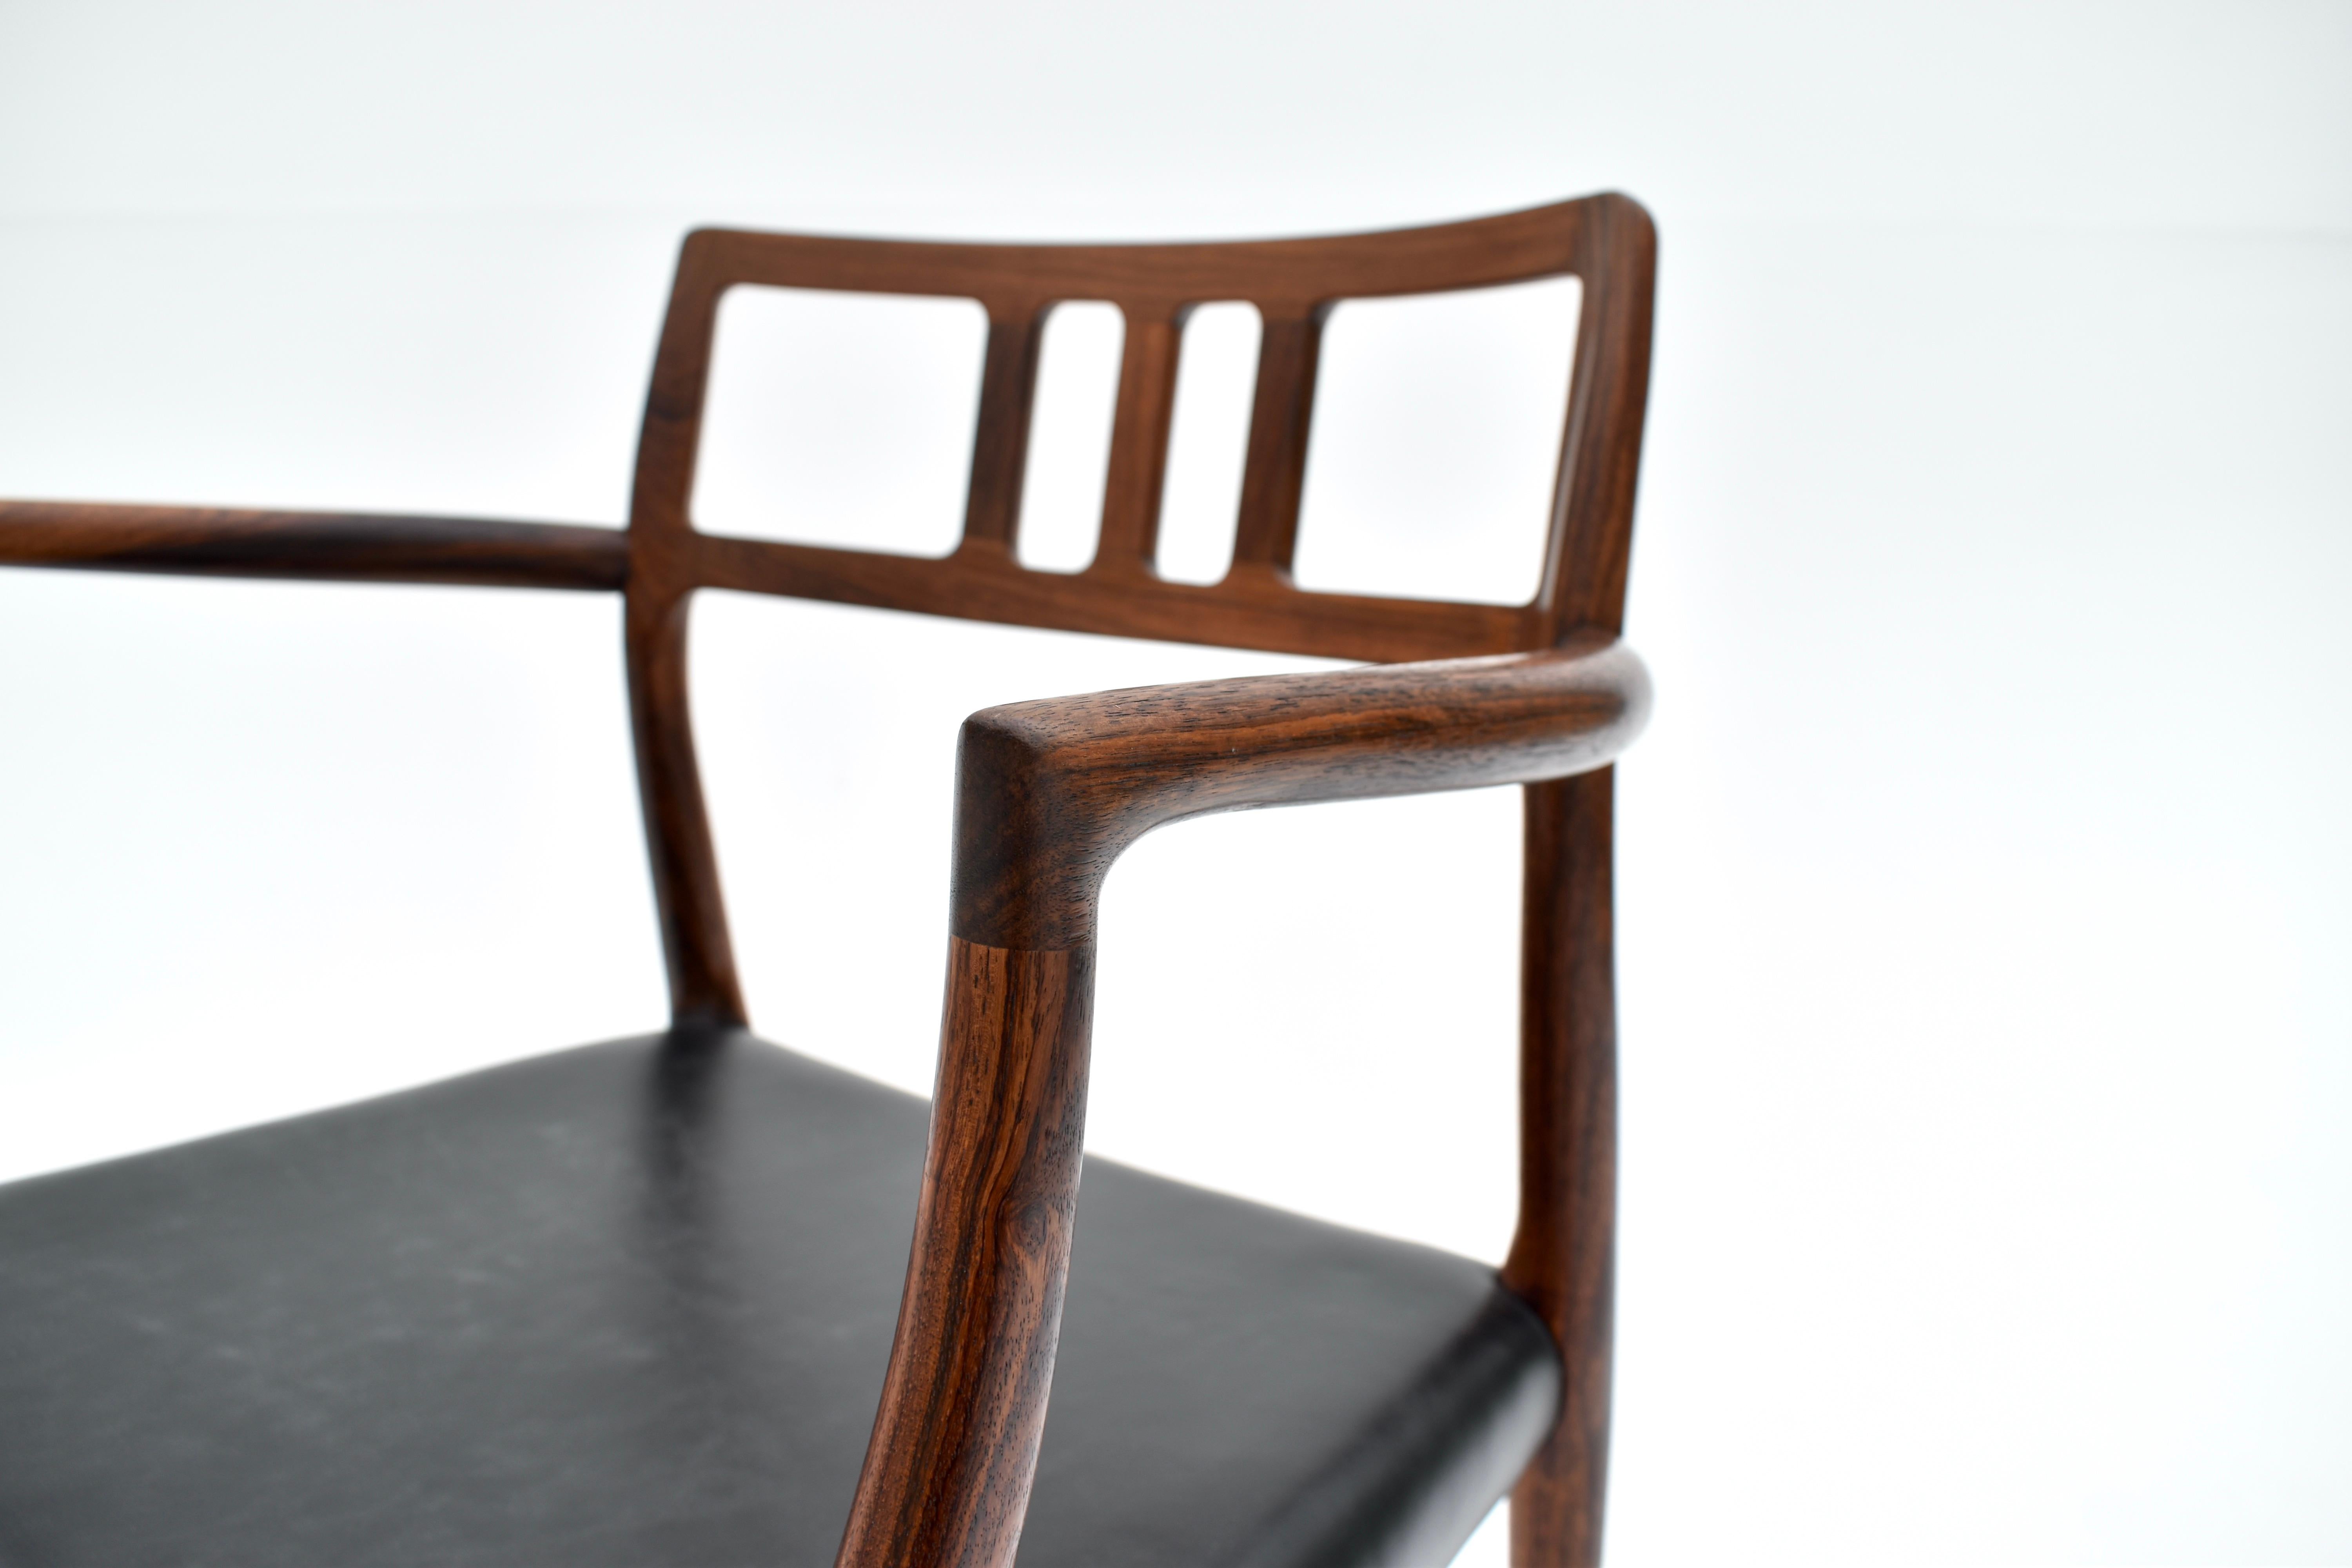 Fauteuil en palissandre massif et cuir noir conçu par Niels Moller en 1966 pour I.L Mollers Mobelfabrik.

Une chaise très recherchée et rarement vue. Classique du design danois, ce modèle est une vitrine du savoir-faire et de l'attention minutieuse